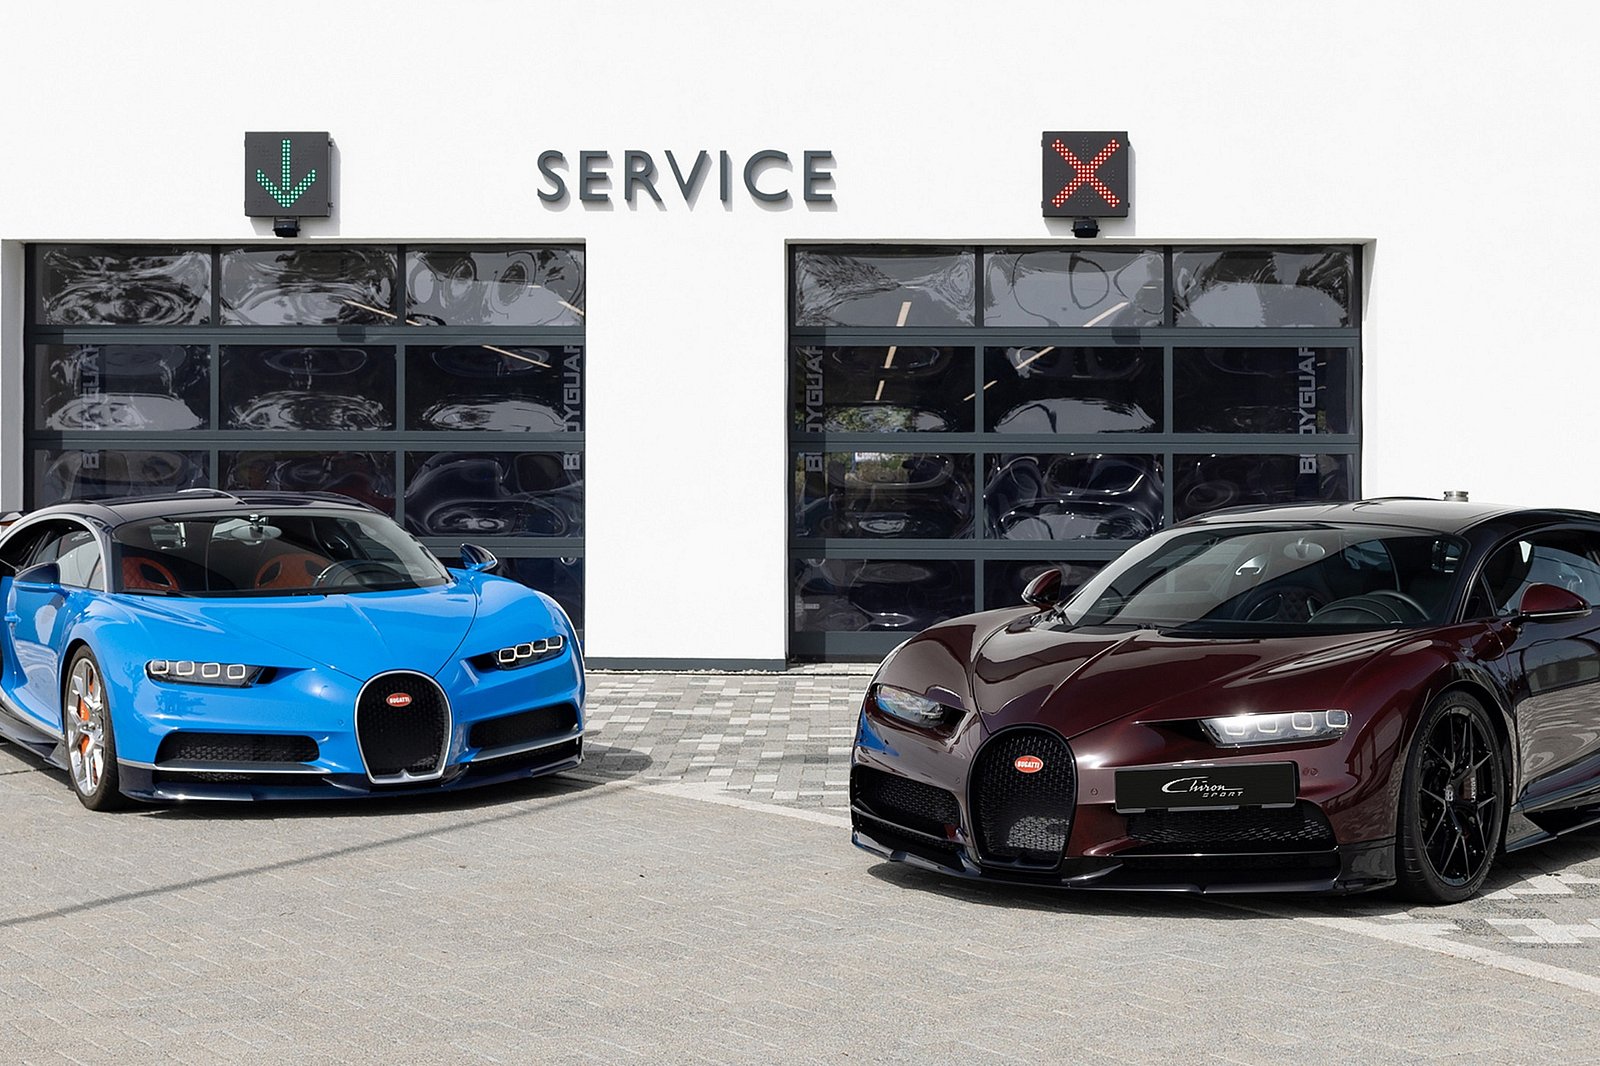 Chỉ có 6 trung tâm dịch vụ trên thế giới nhưng sao chẳng khách hàng nào phàn nàn về chất lượng dịch vụ Bugatti? - Ảnh 1.